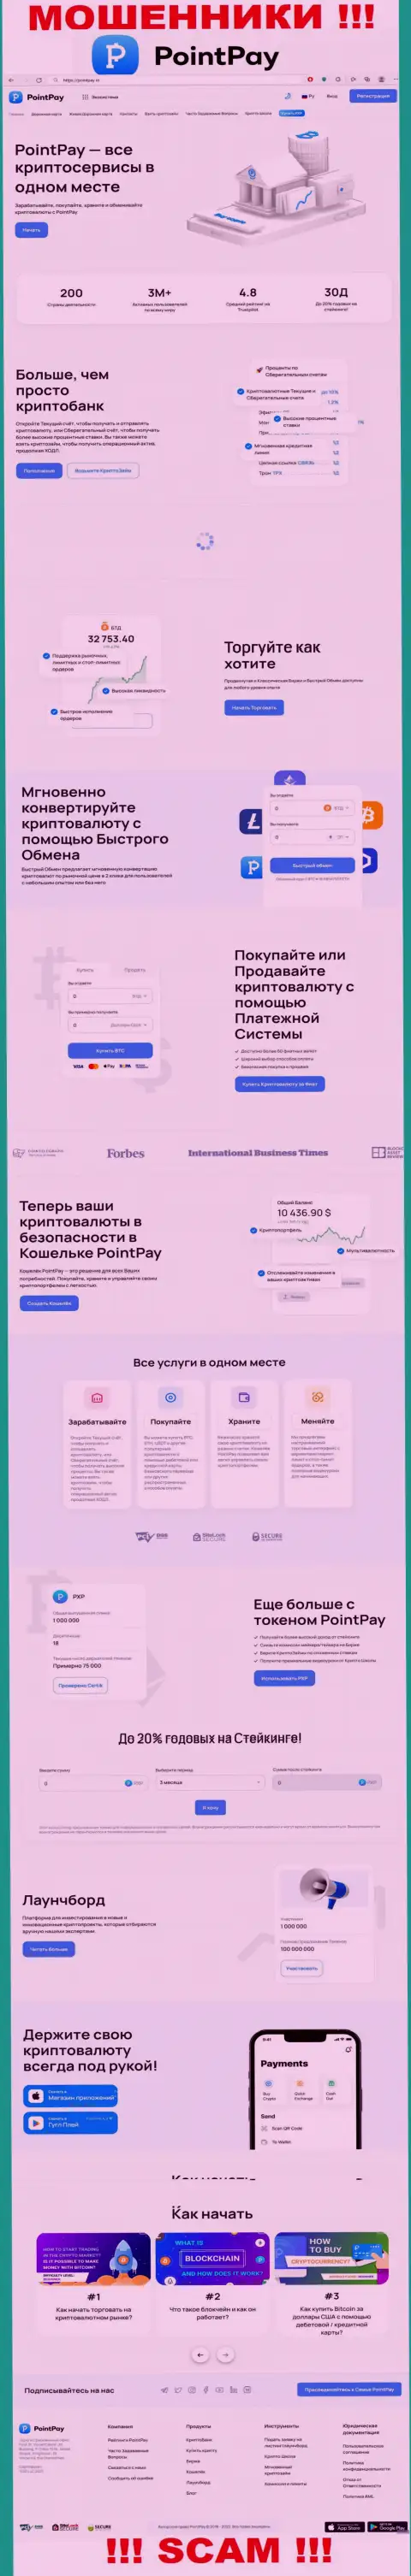 Скриншот официального интернет-ресурса ПоинтПей, заполненного ложными обещаниями